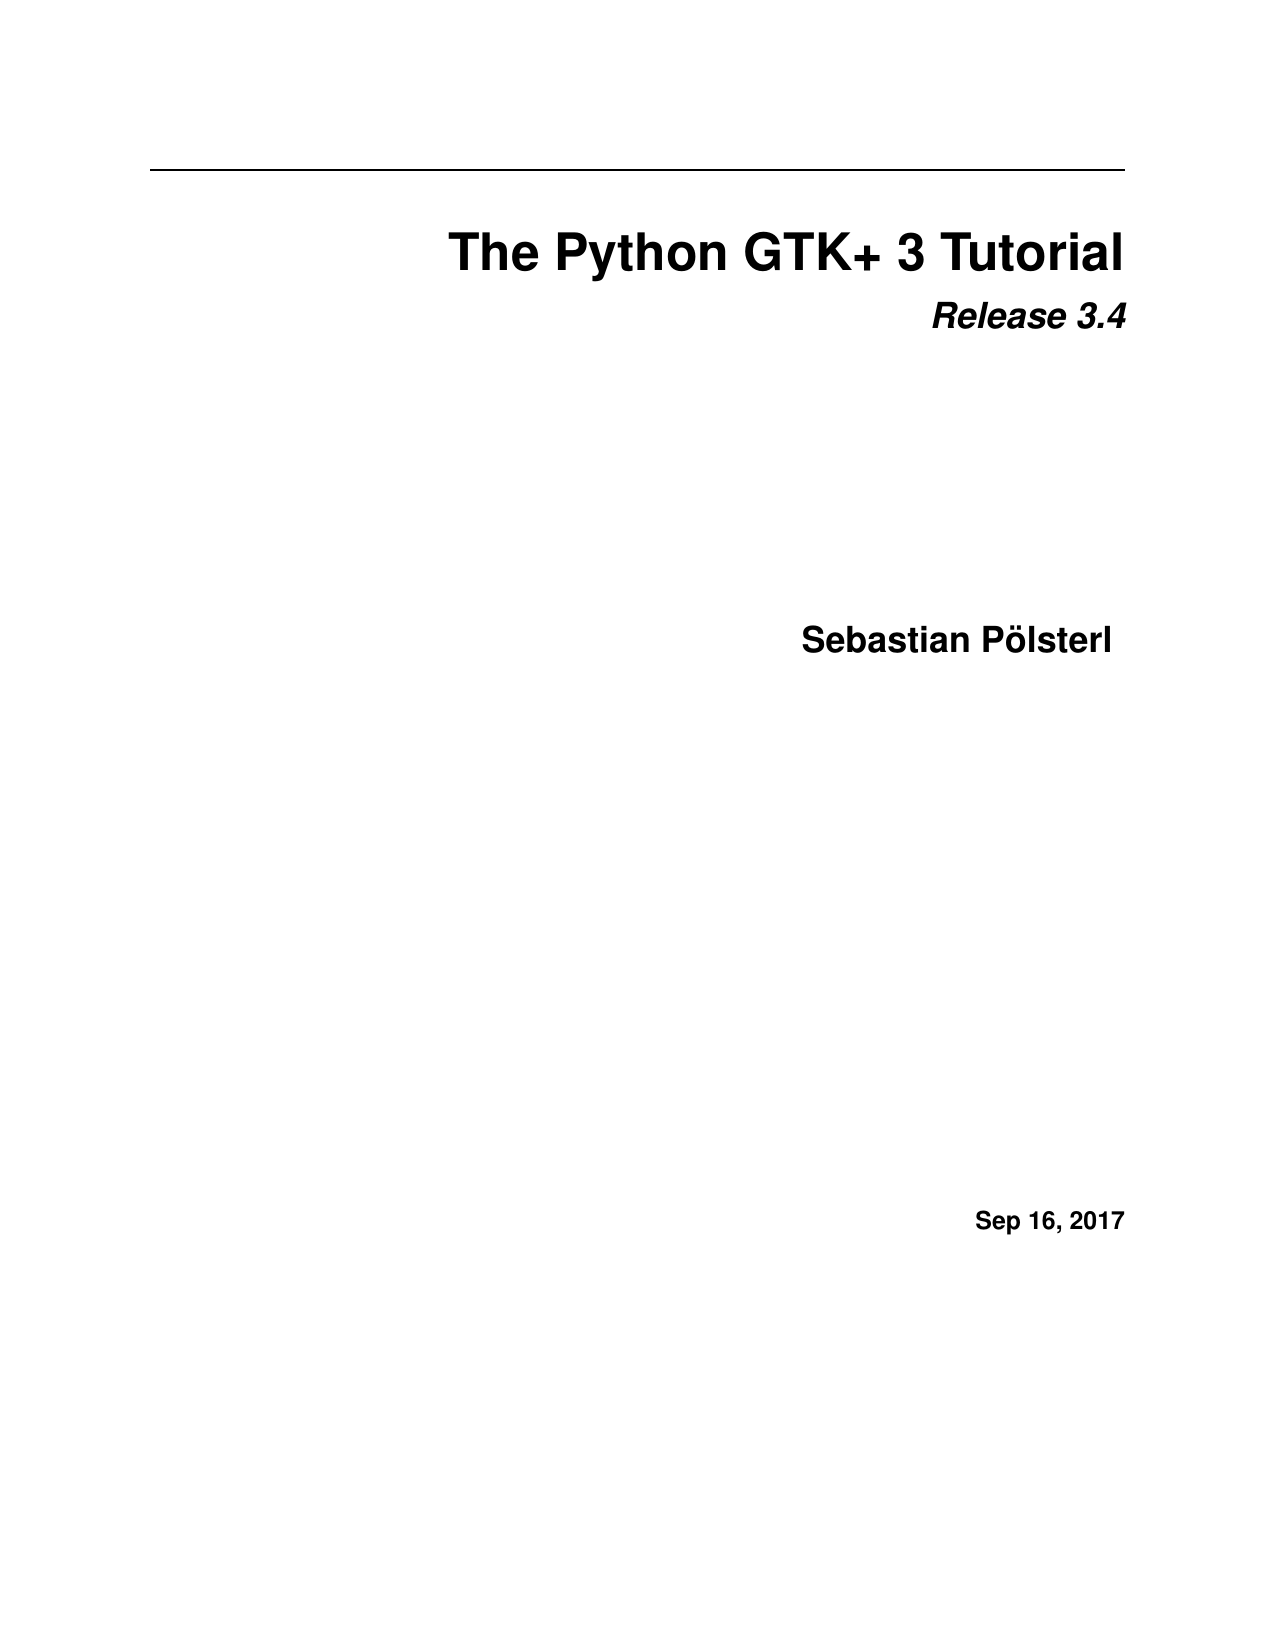 The Python GTK+ 3 Tutorial. Release 3.4, 2017 by Sebastian Pölsterl